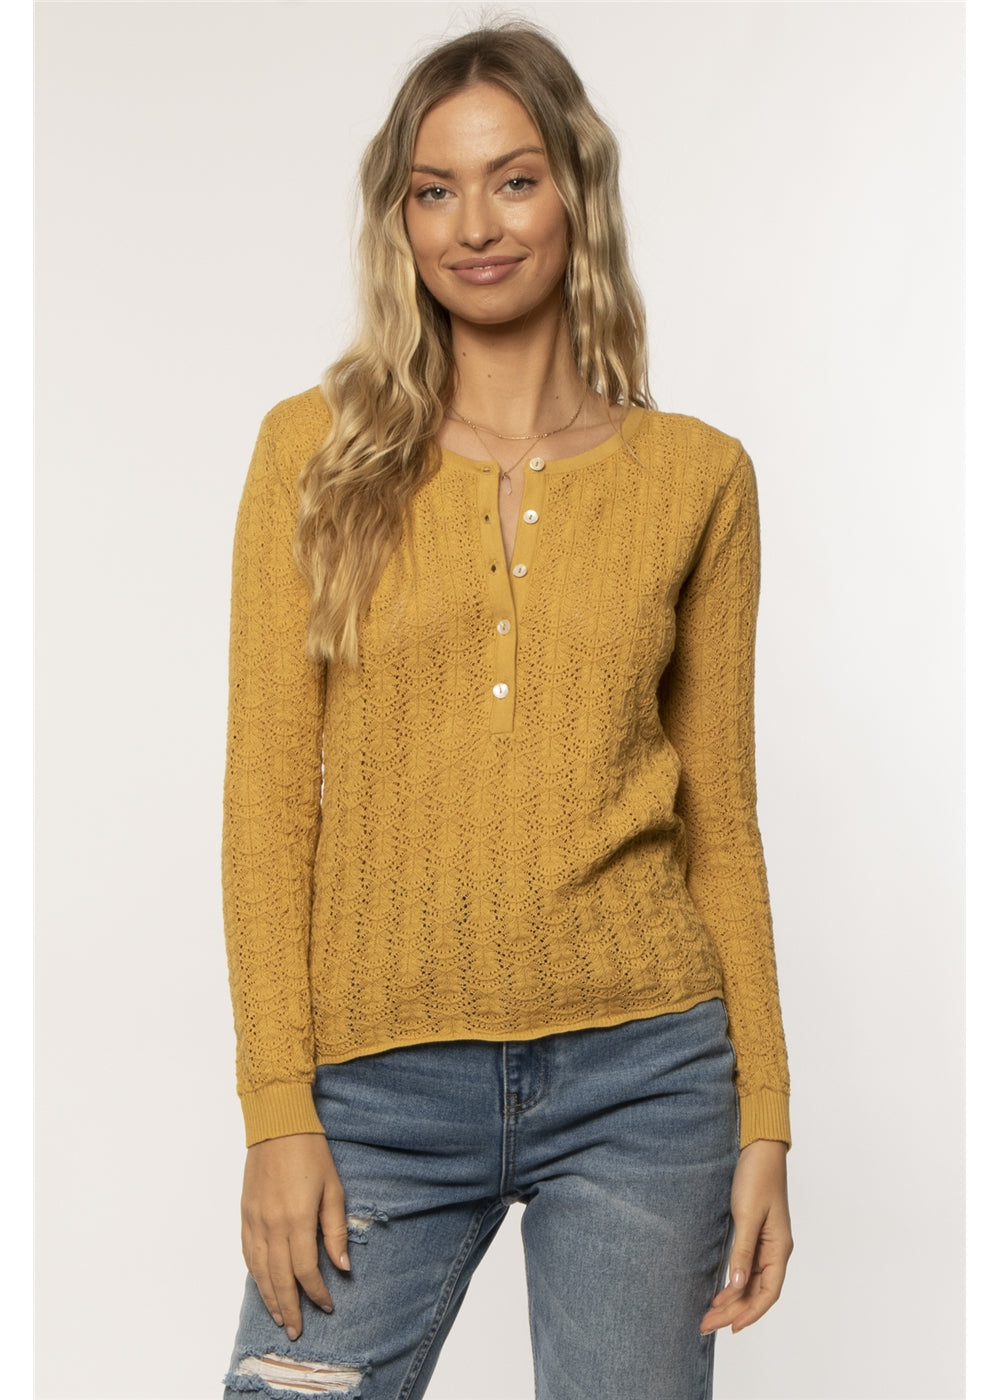 Amuse Society Penrose Long Sleeve Sweater - Marigold